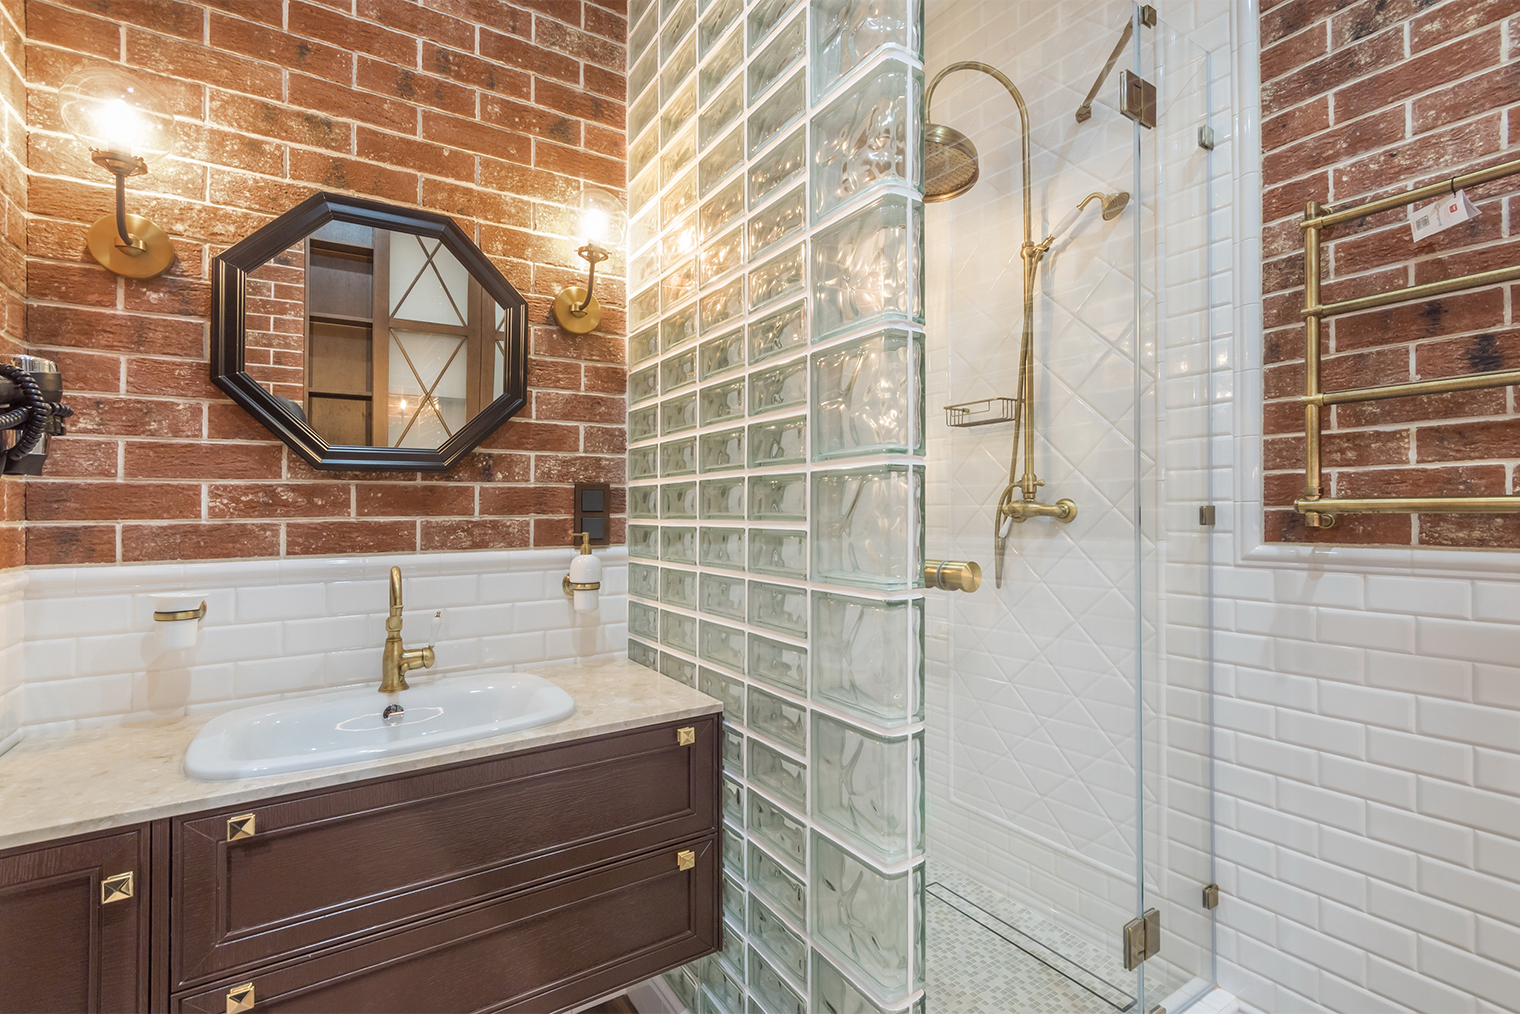 Перегородкой из стеклоблоков можно отделить душевую от ванной комнаты. Фотография: Alhim / Shutterstock / FOTODOM